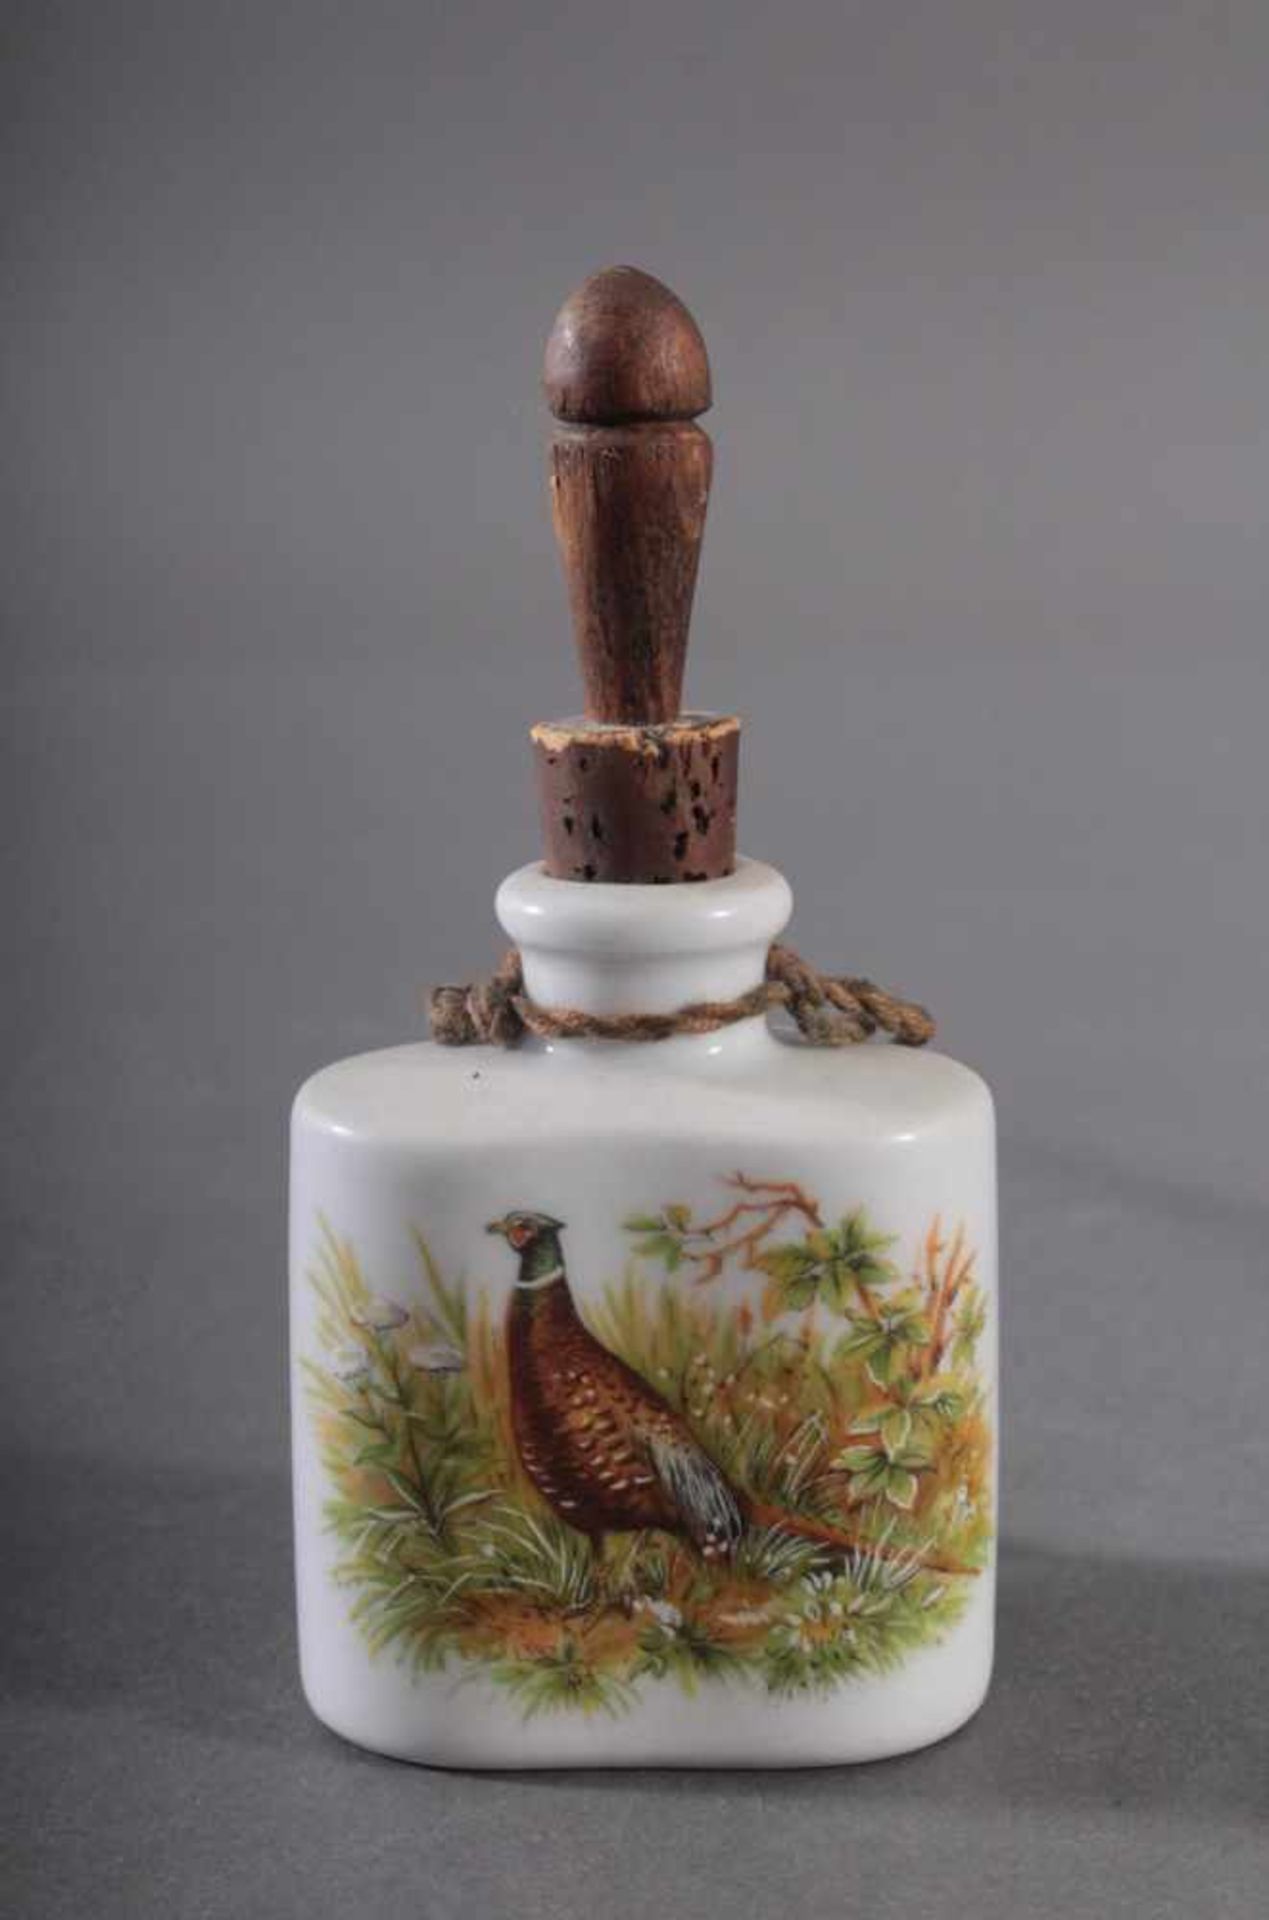 Steckpfeife und kleine JagdflascheHolz/Horn und gesteckter Pfeifenkopf aus Porzellan, farbig - Bild 3 aus 3